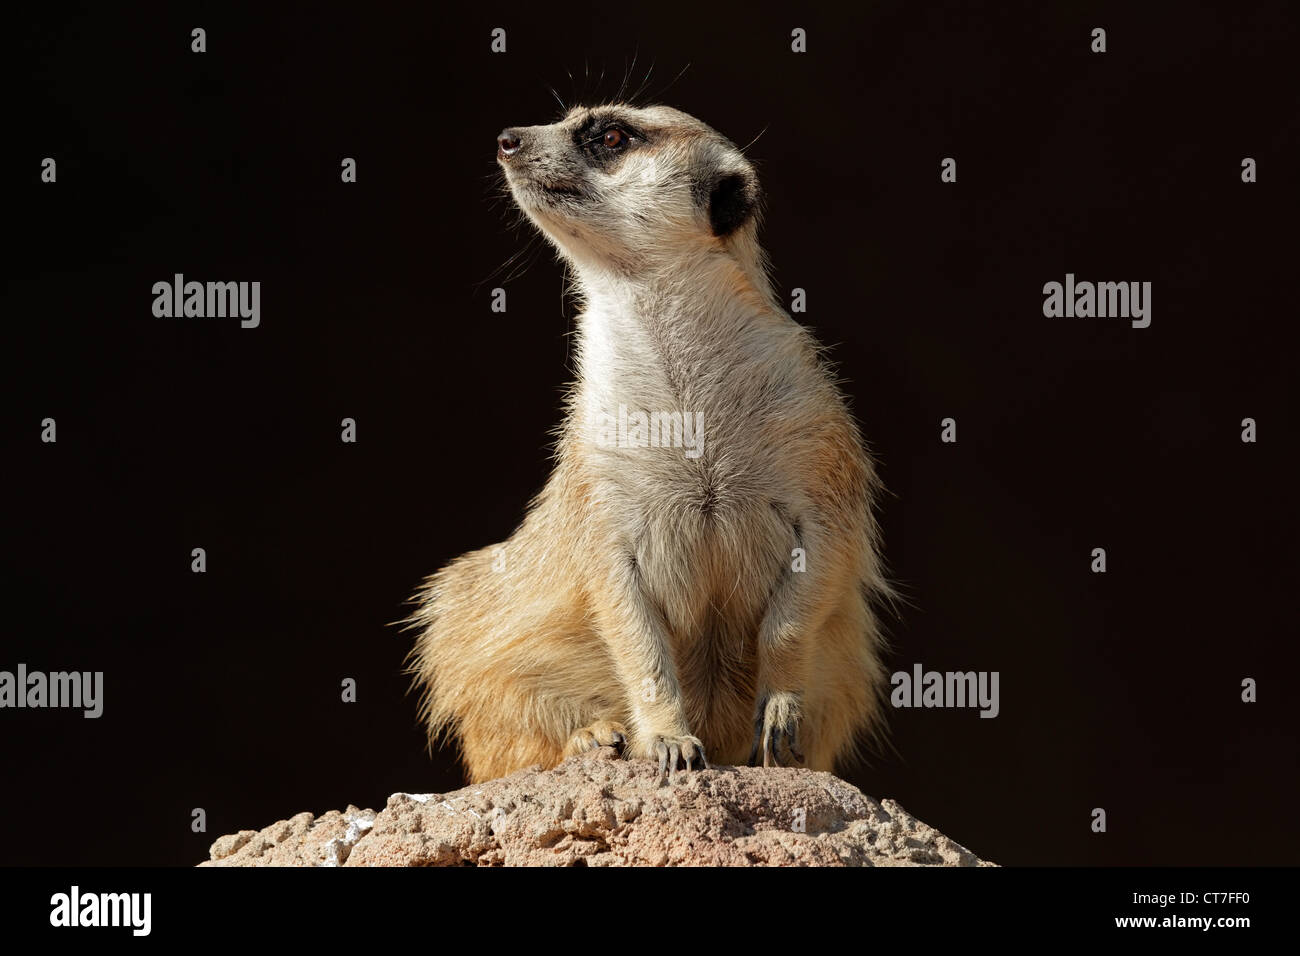 Meerkat alerte (Suricata suricatta) en garde sur le dessus d'une fourmilière, Afrique du Sud Banque D'Images